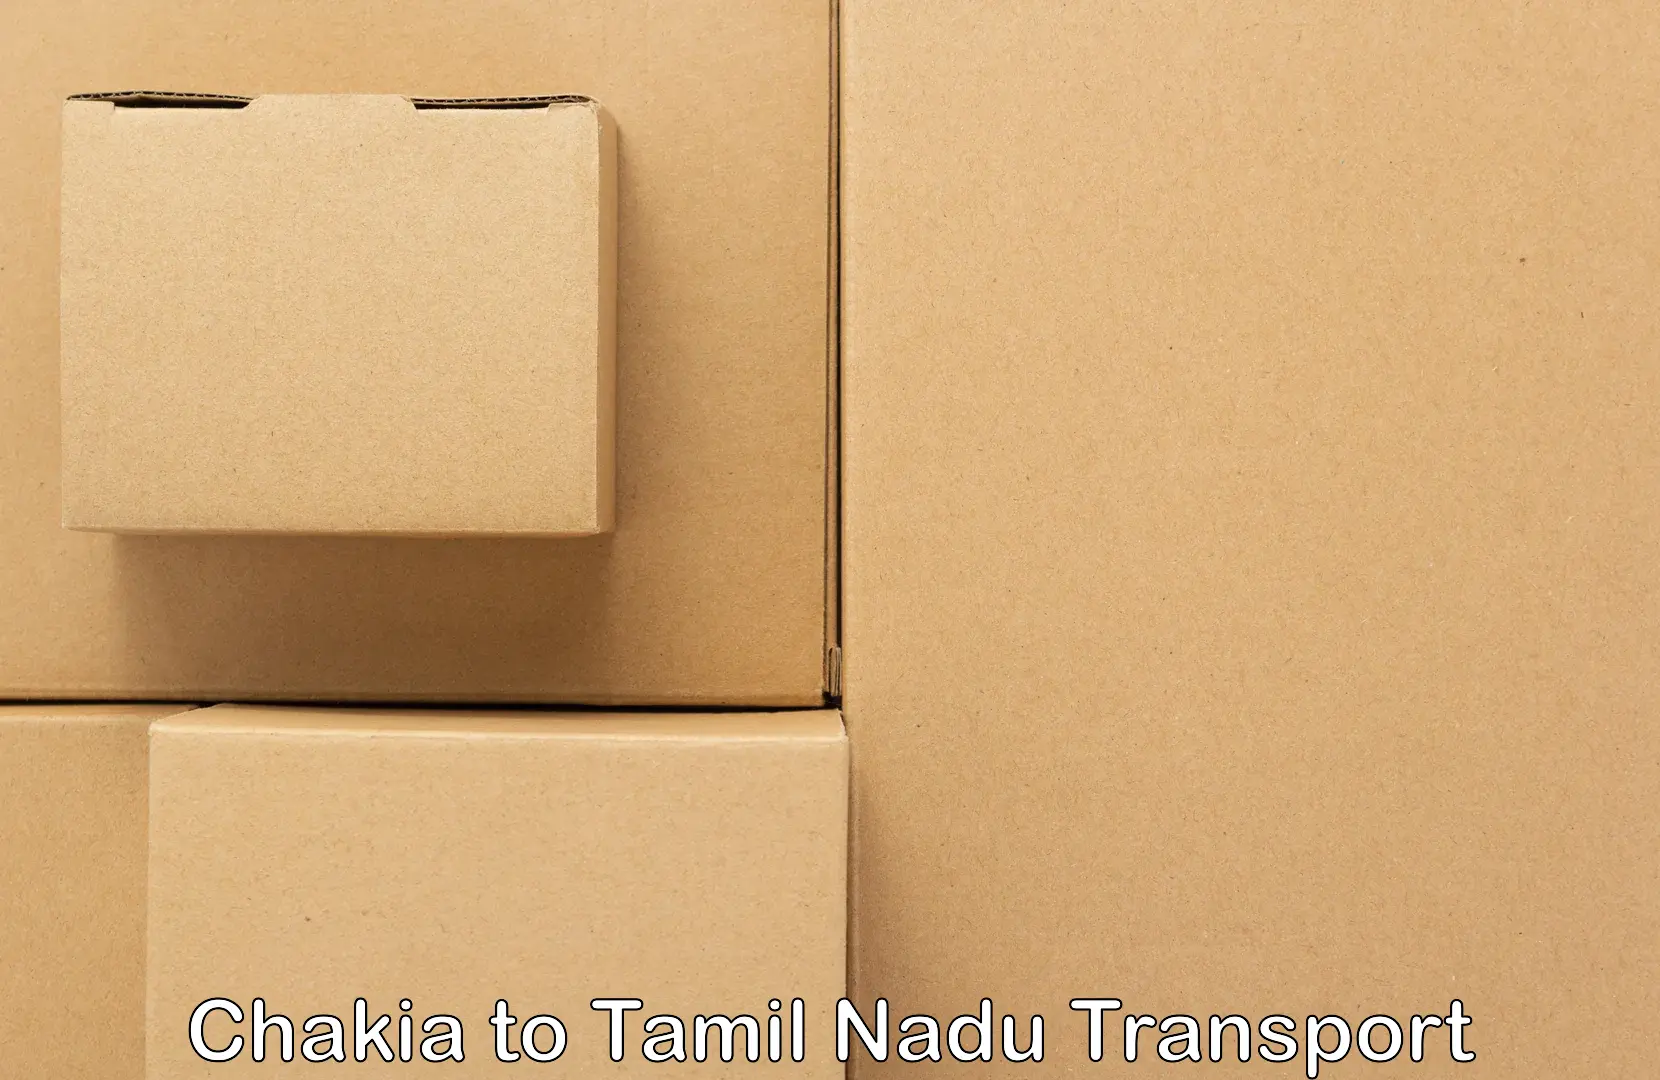 Online transport booking Chakia to Rameswaram